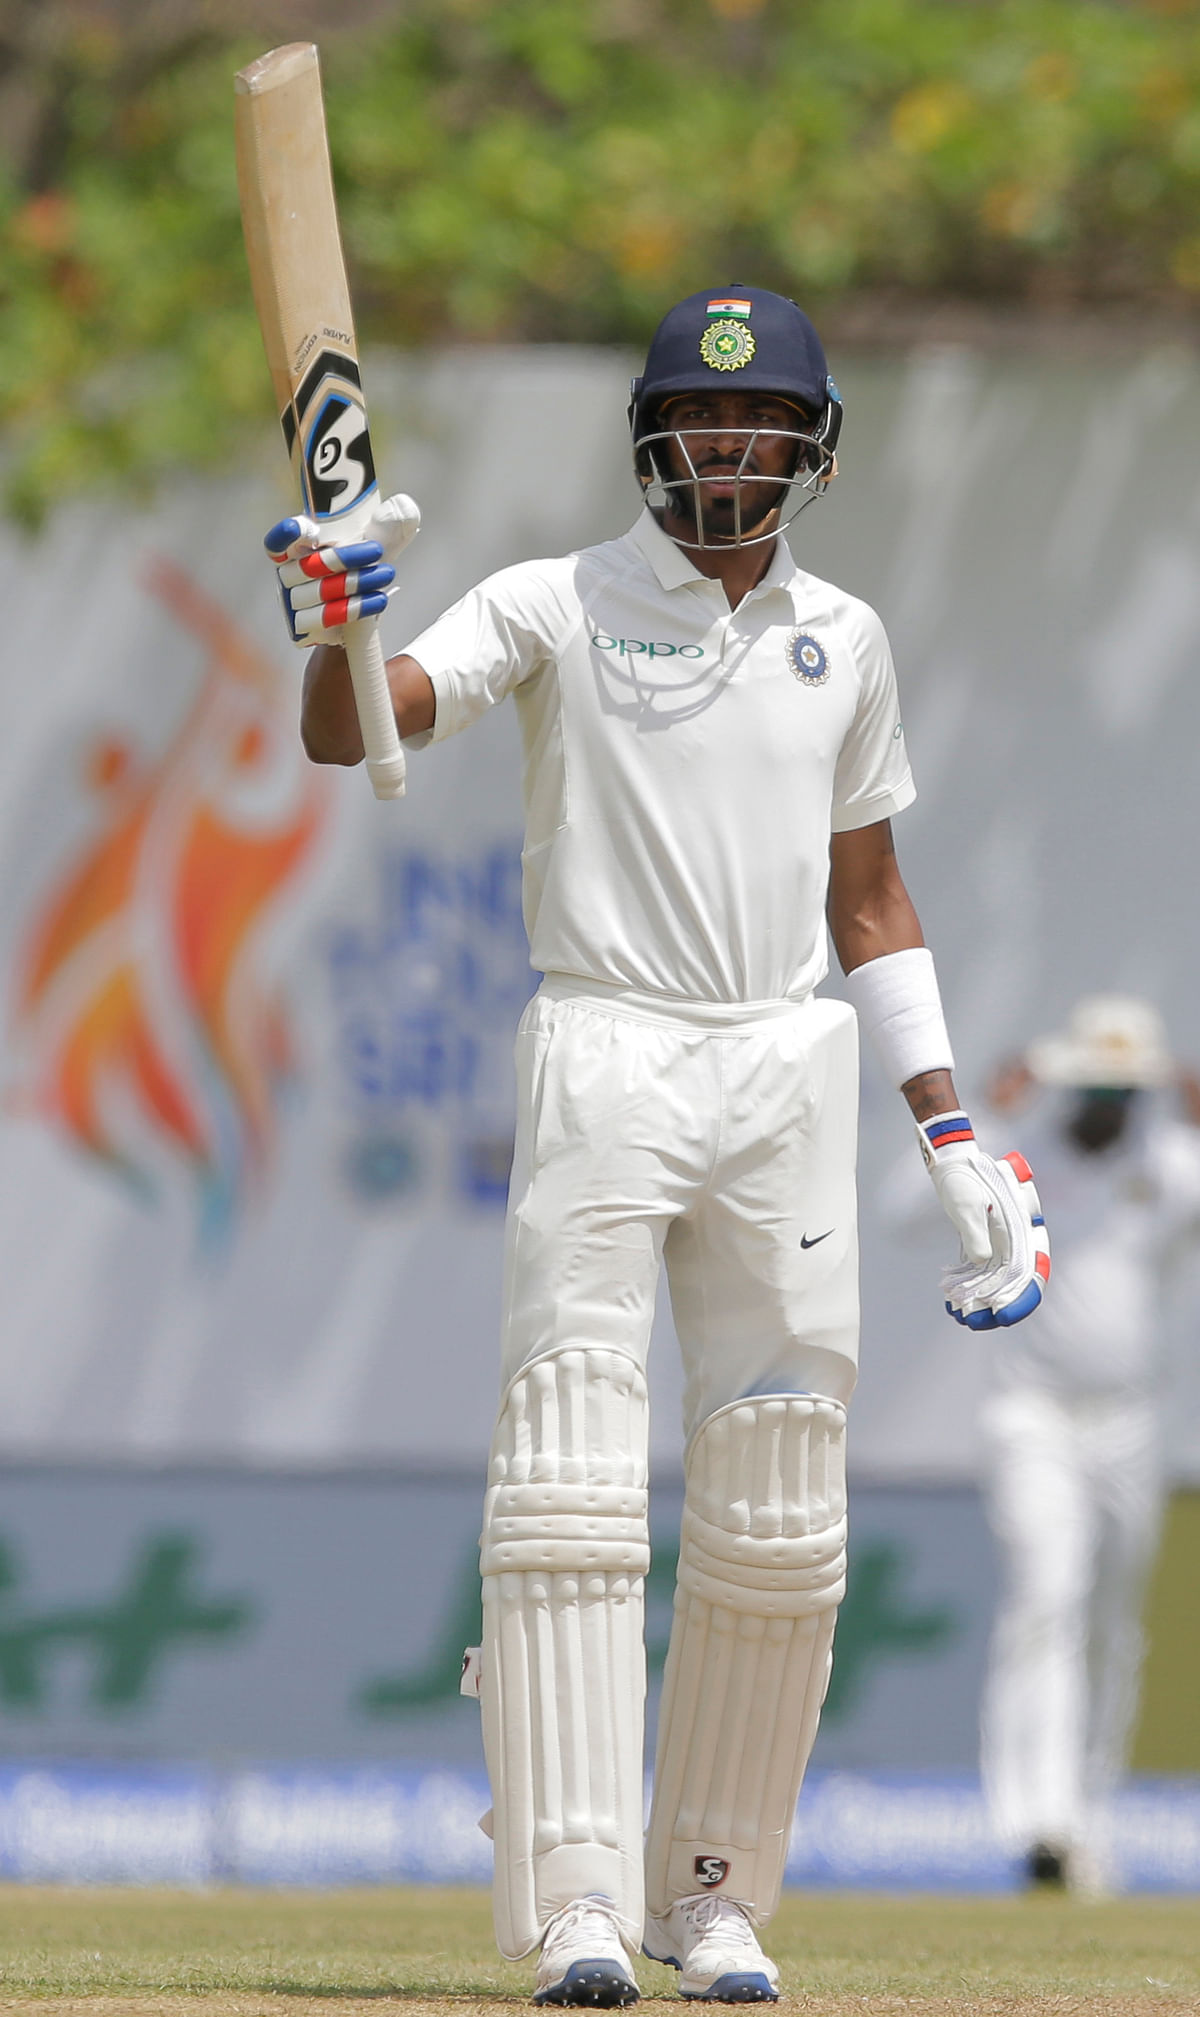 भारतीय गेंदबाजों ने श्रीलंका के 5 विकेट चटका दिए हैं और अभी भी लंकाई टीम भारत को स्कोर से 446 रन पीछे हैं